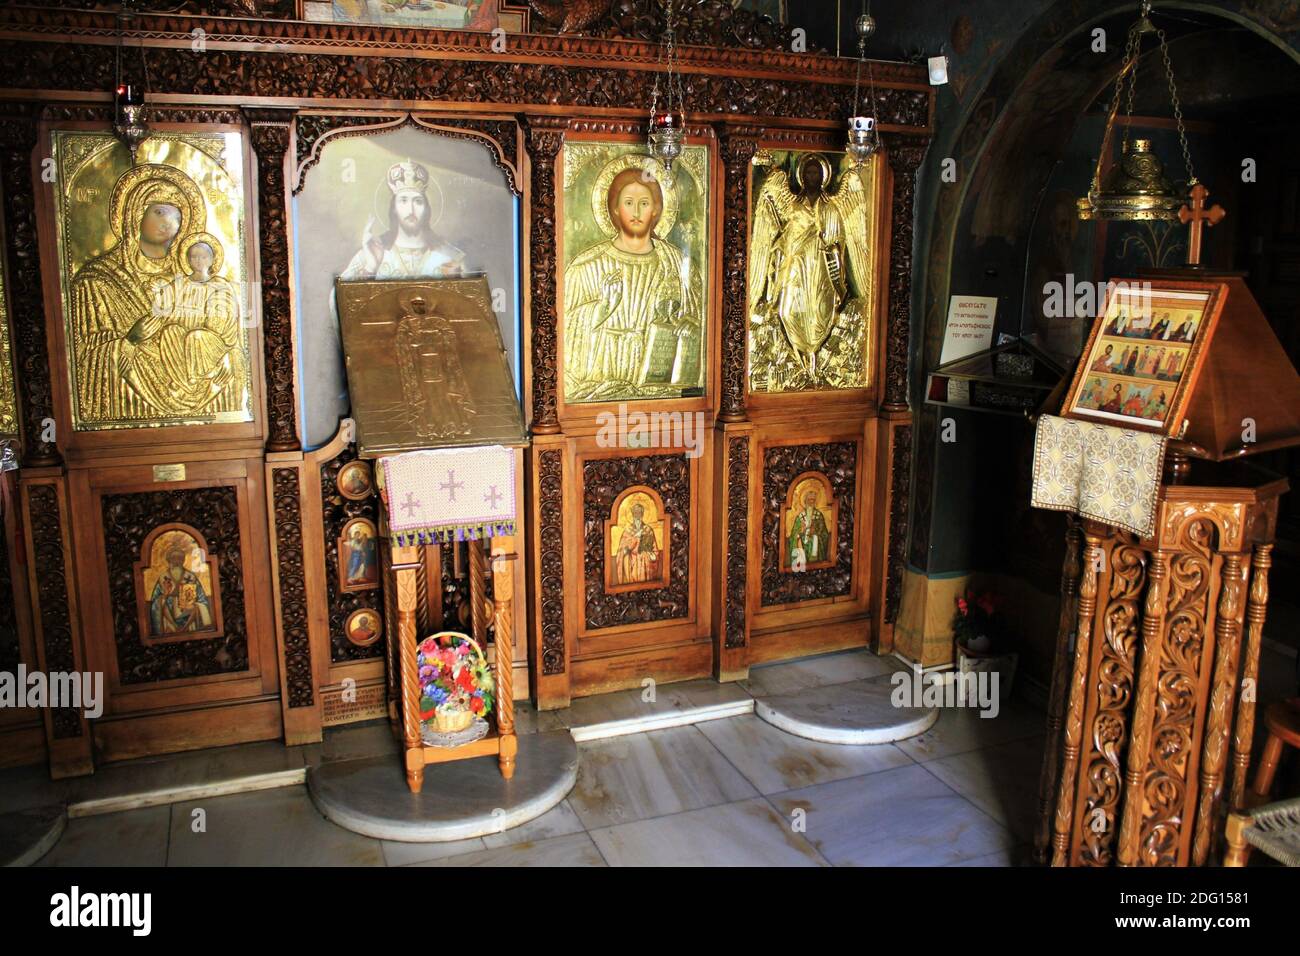 L'interno di una vecchia chiesa bizantina ortodossa ad Atene, Grecia - Marzo 12 2020. Foto Stock